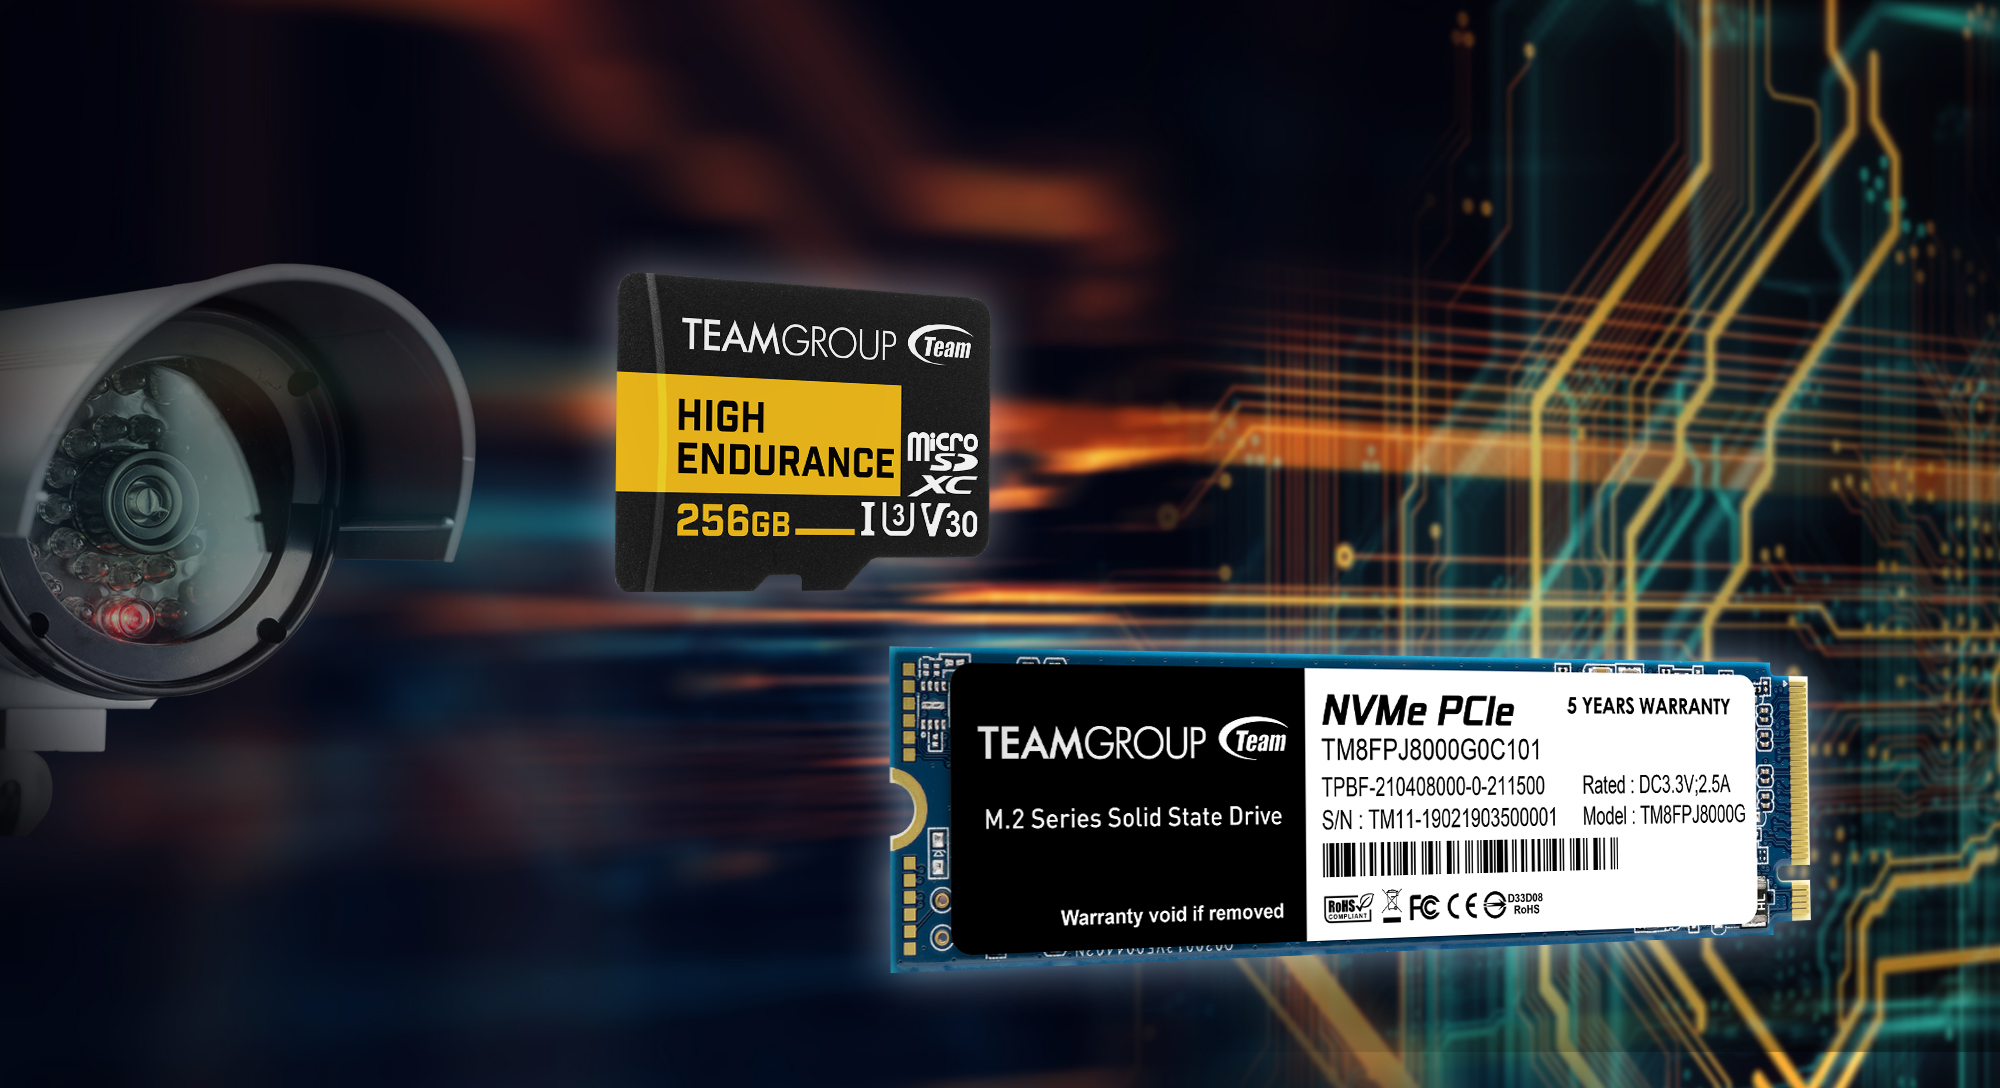 TEAMGROUP anuncia la tarjeta de memoria del sistema de vigilancia HIGH ENDURANCE SSD MP34Q M.2 PCIe de 8TB,  sus mejores soluciones para almacenamiento masivo de alto rendimiento